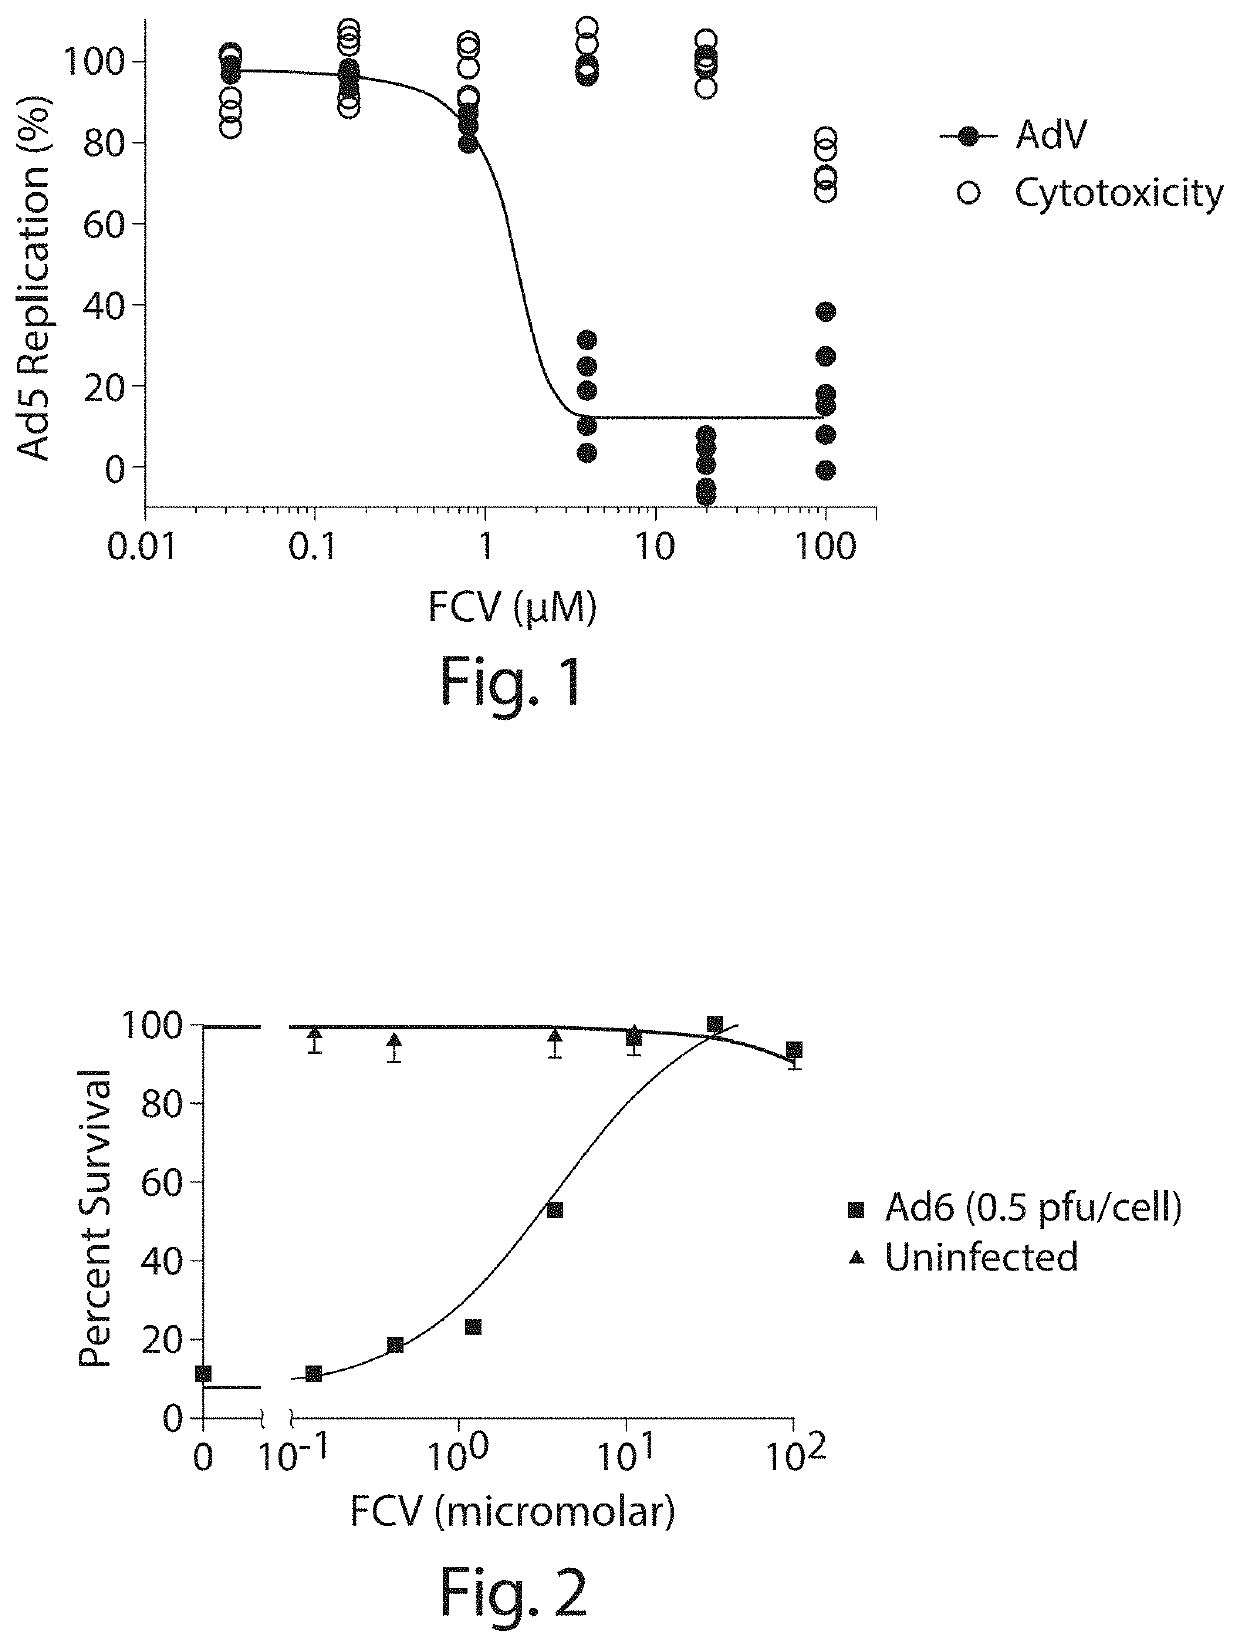 Inhibition of adenovirus with filociclovir